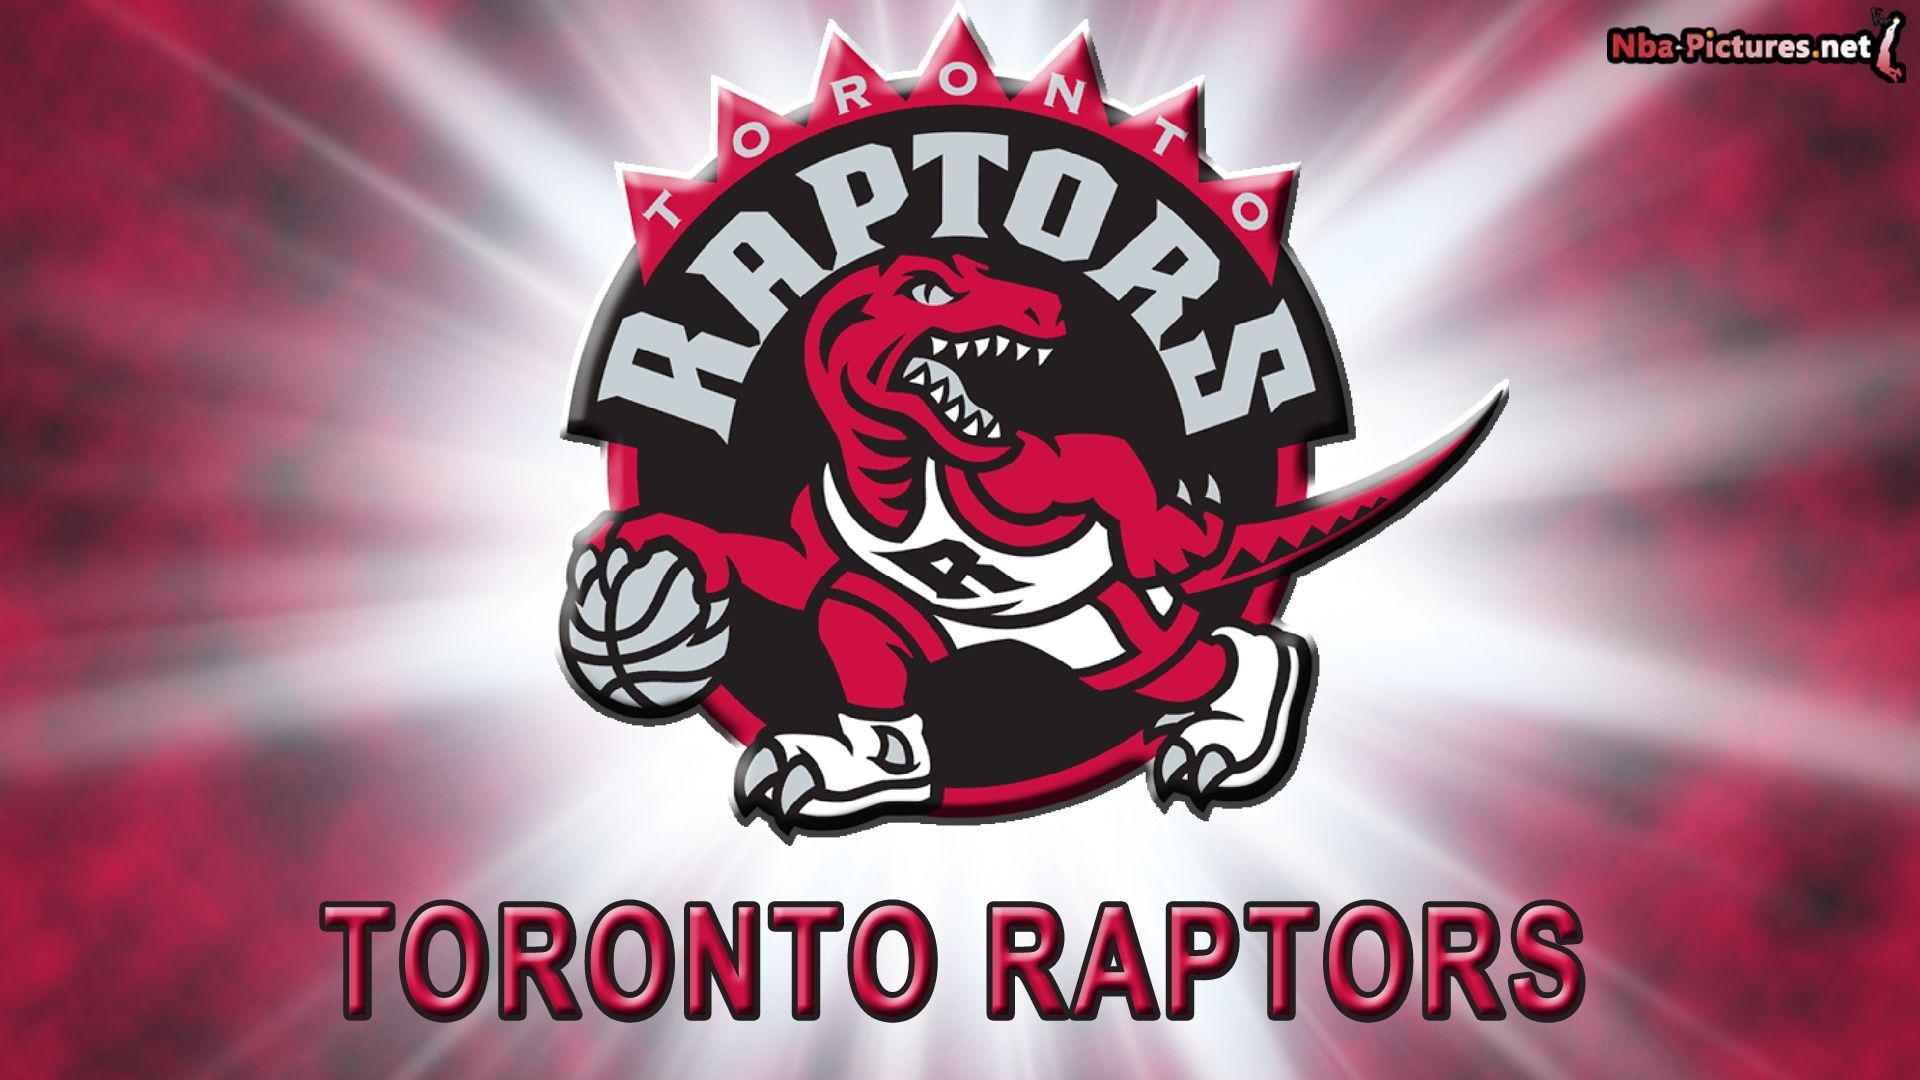 Toronto Raptors Logo 2014. Toronto Raptors Logo Wallpaper